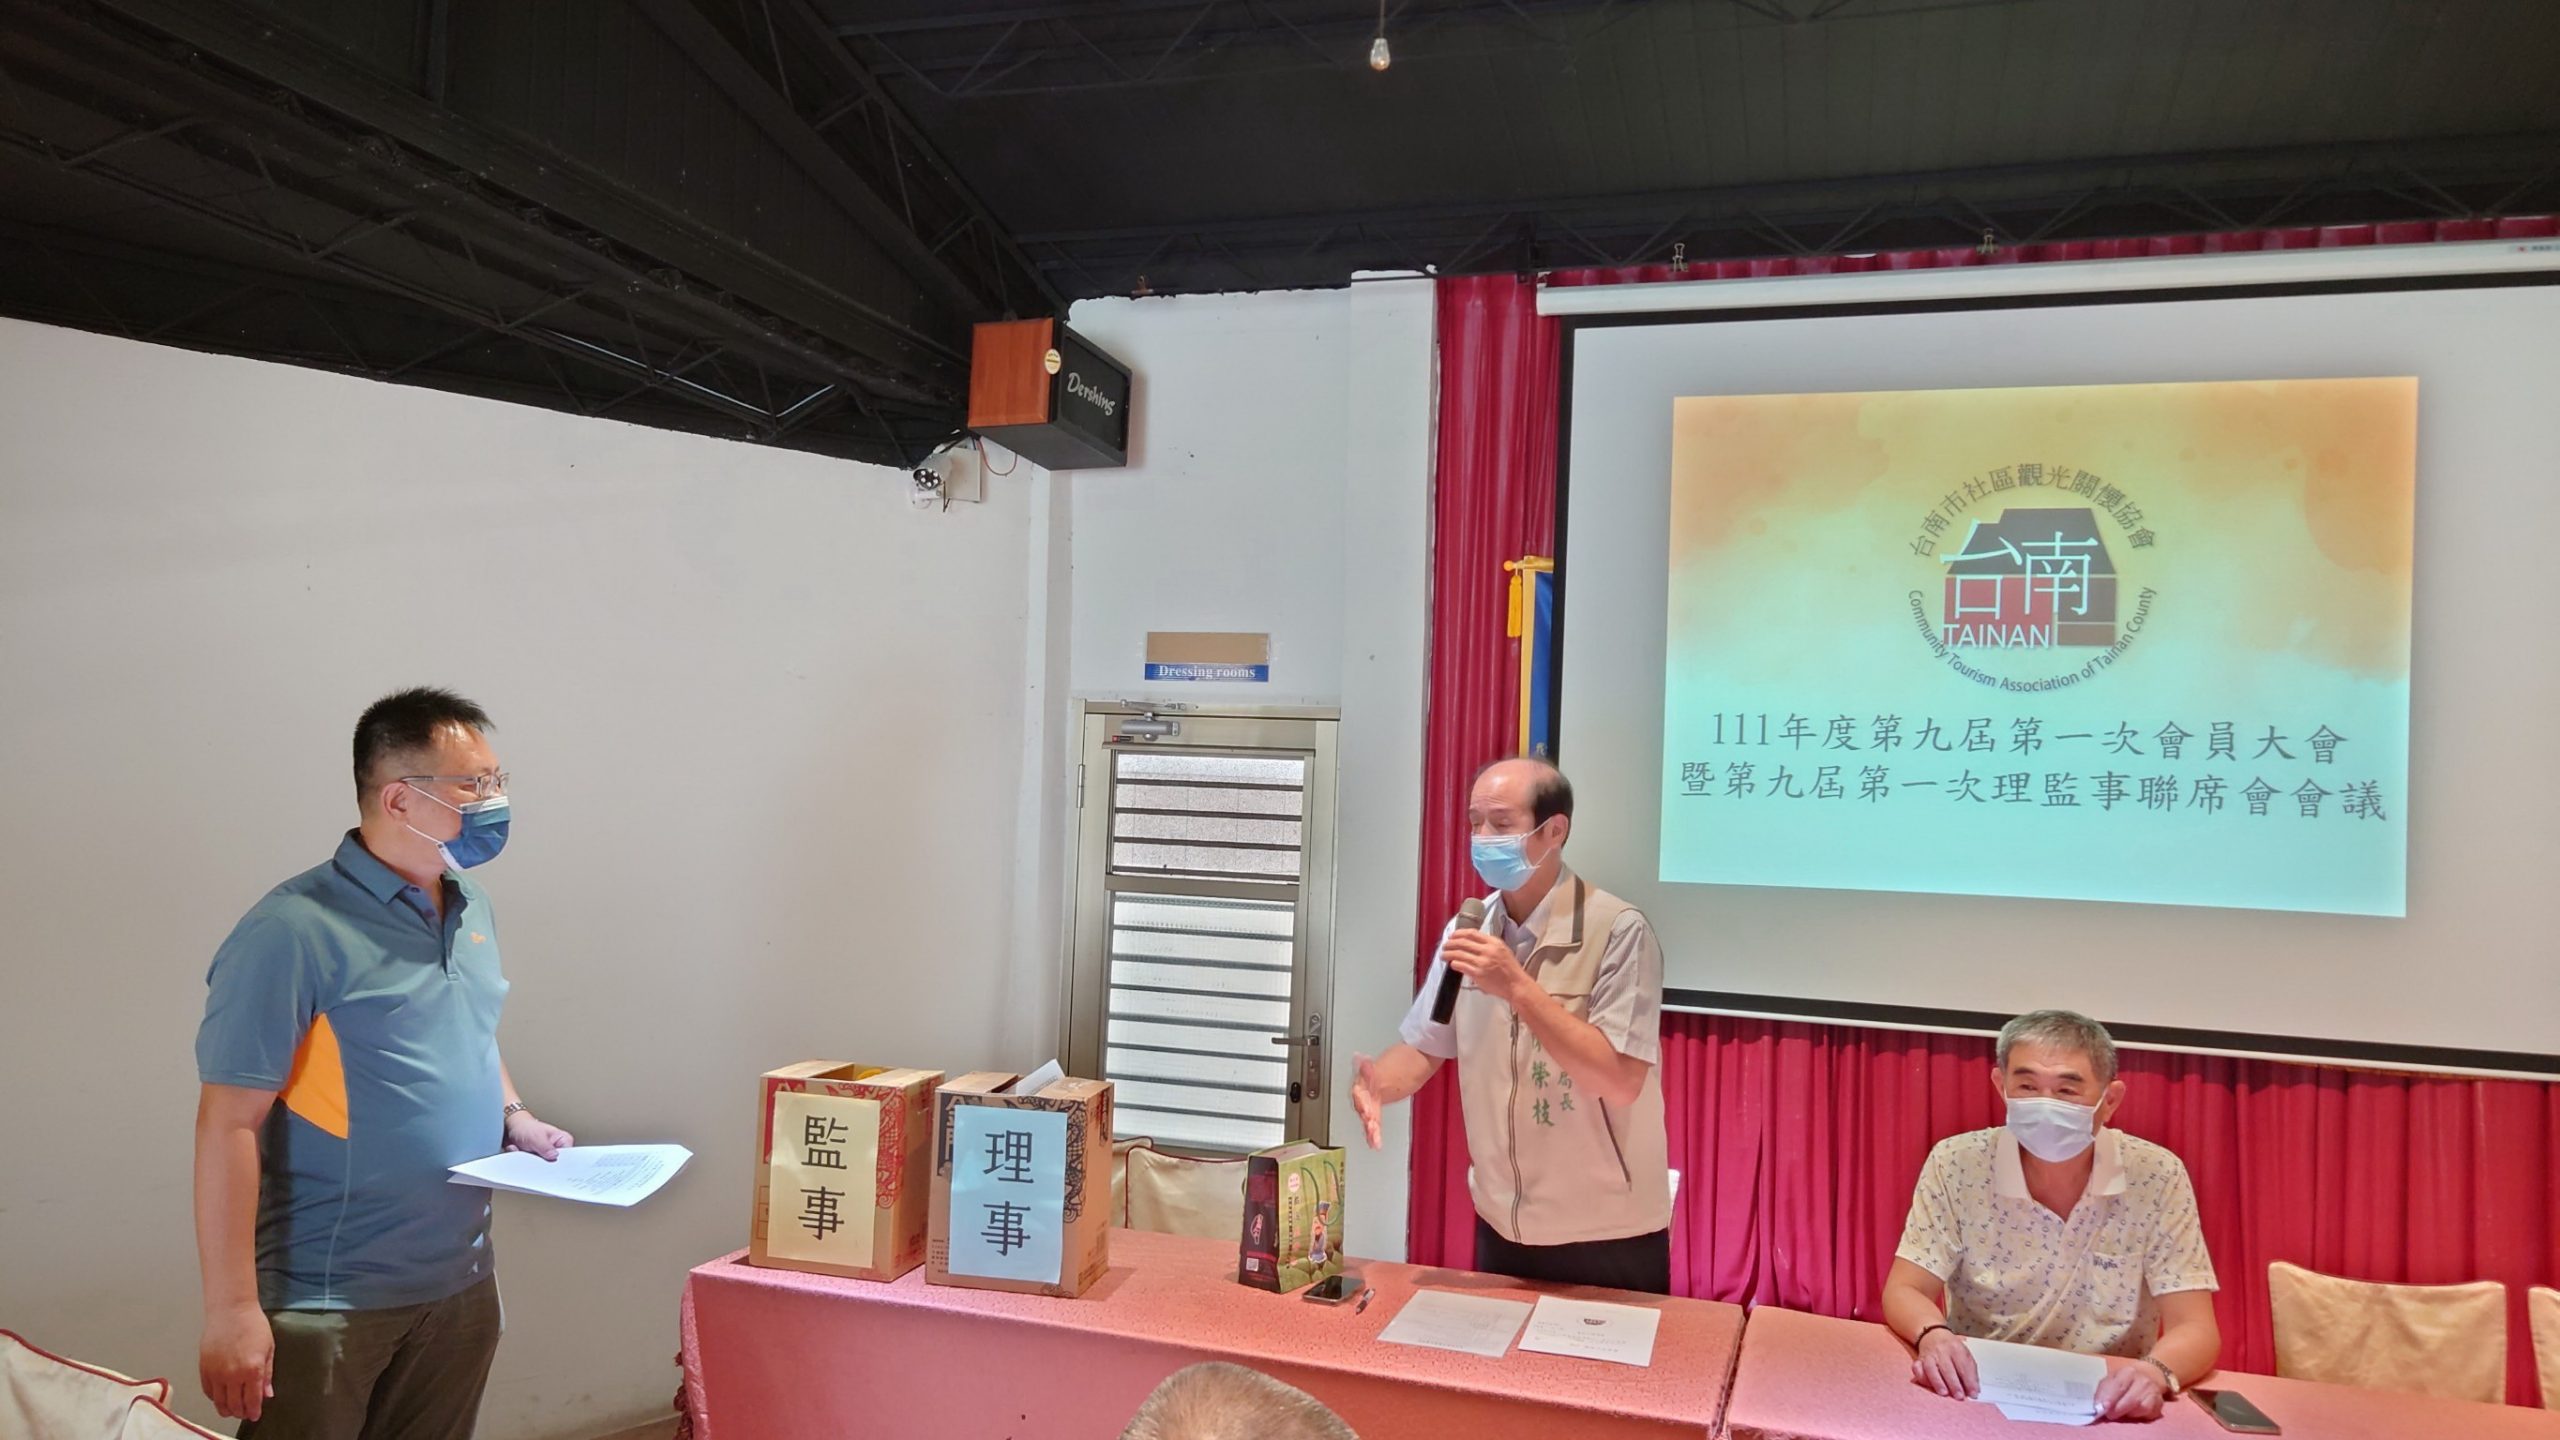 台南市社區觀光關懷協會改選許秉翔教授當選理事長